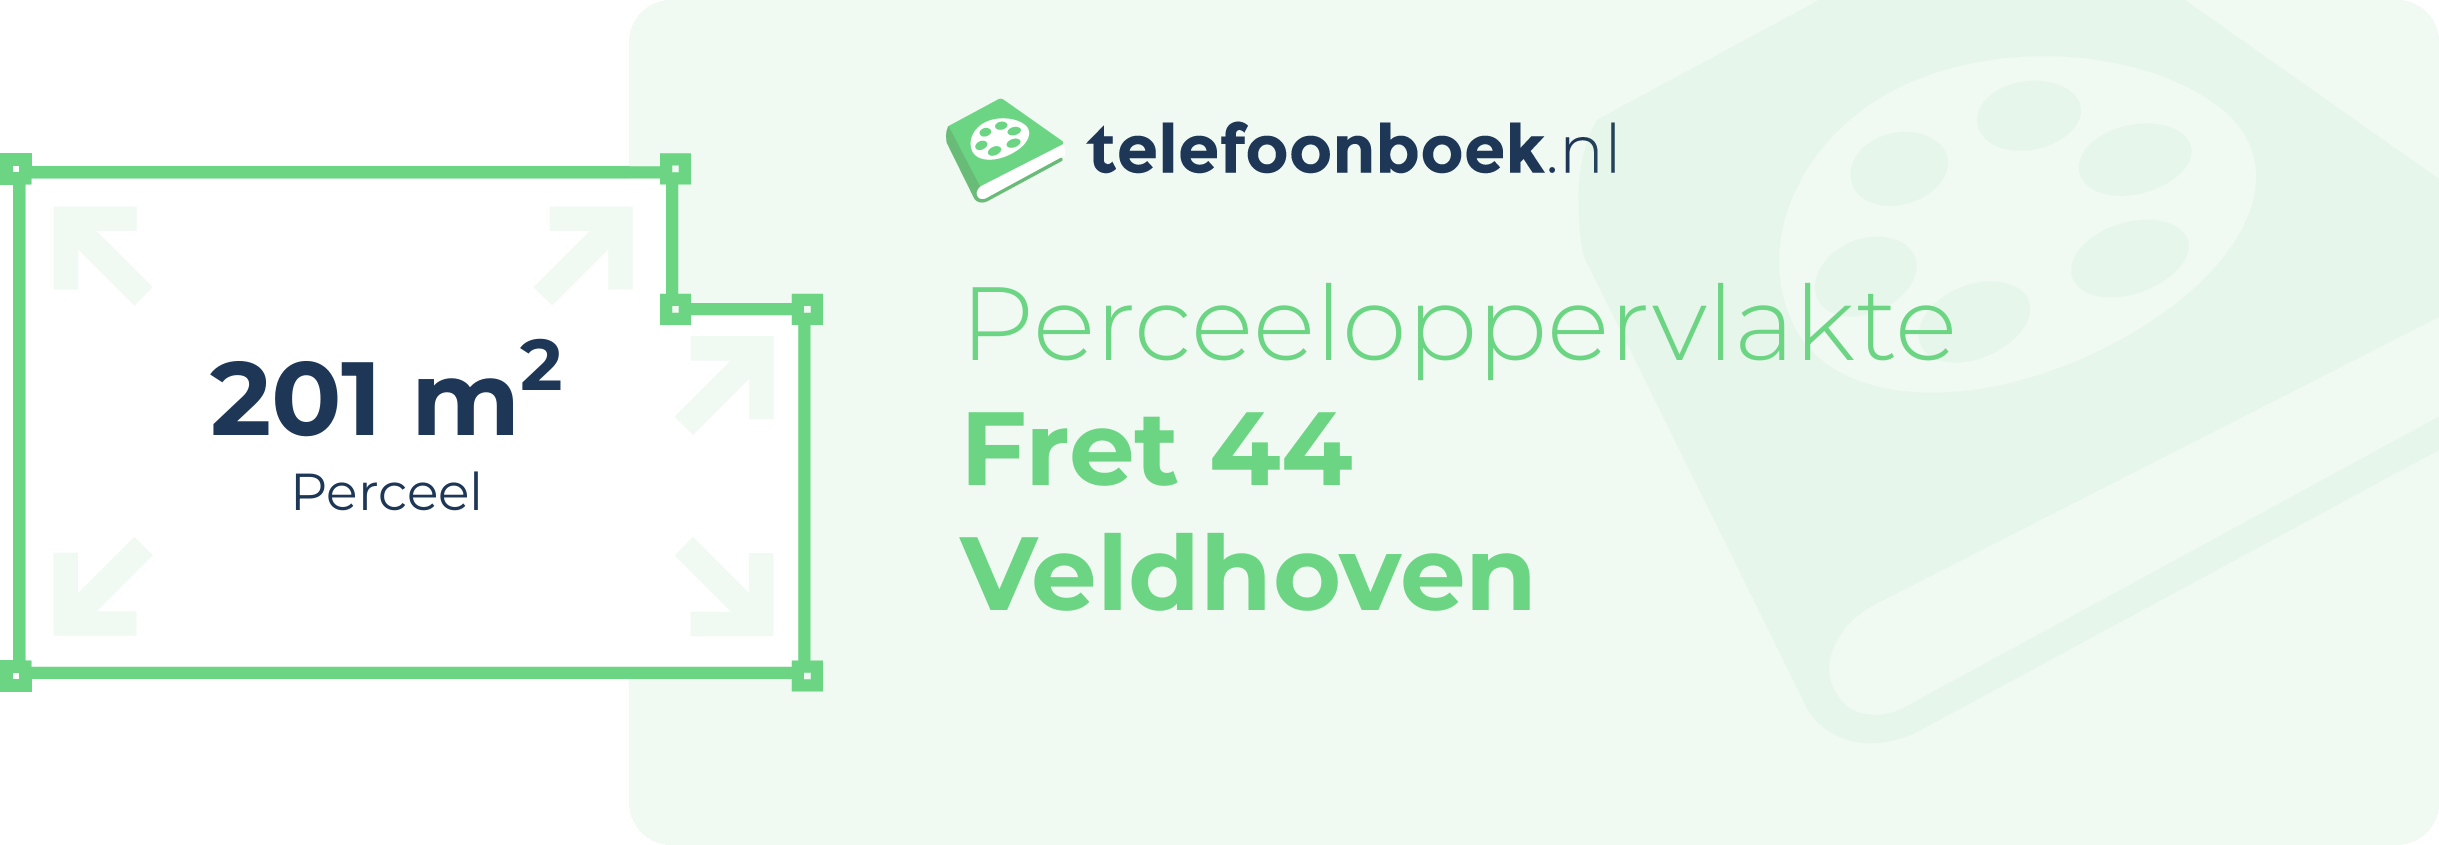 Perceeloppervlakte Fret 44 Veldhoven